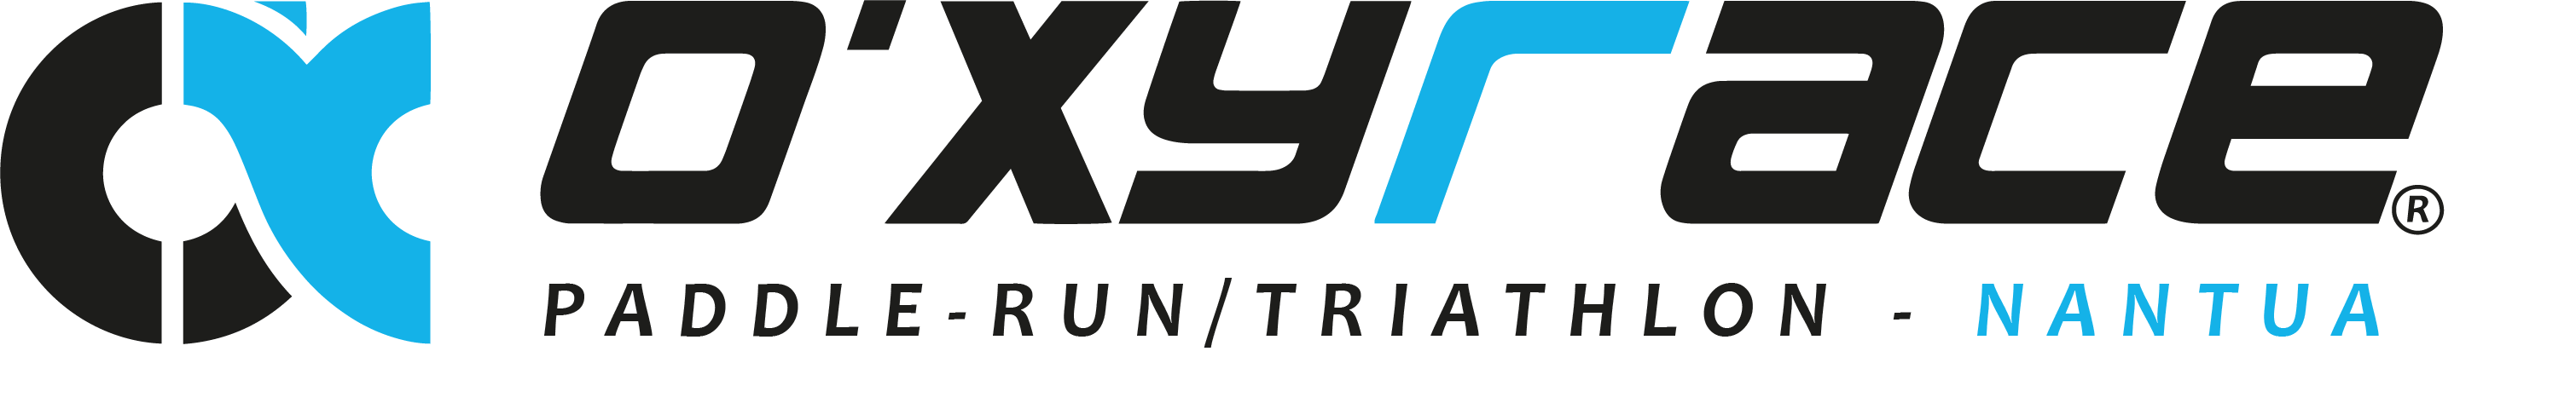 Logo Paddle Run / Triathlon de Nantua